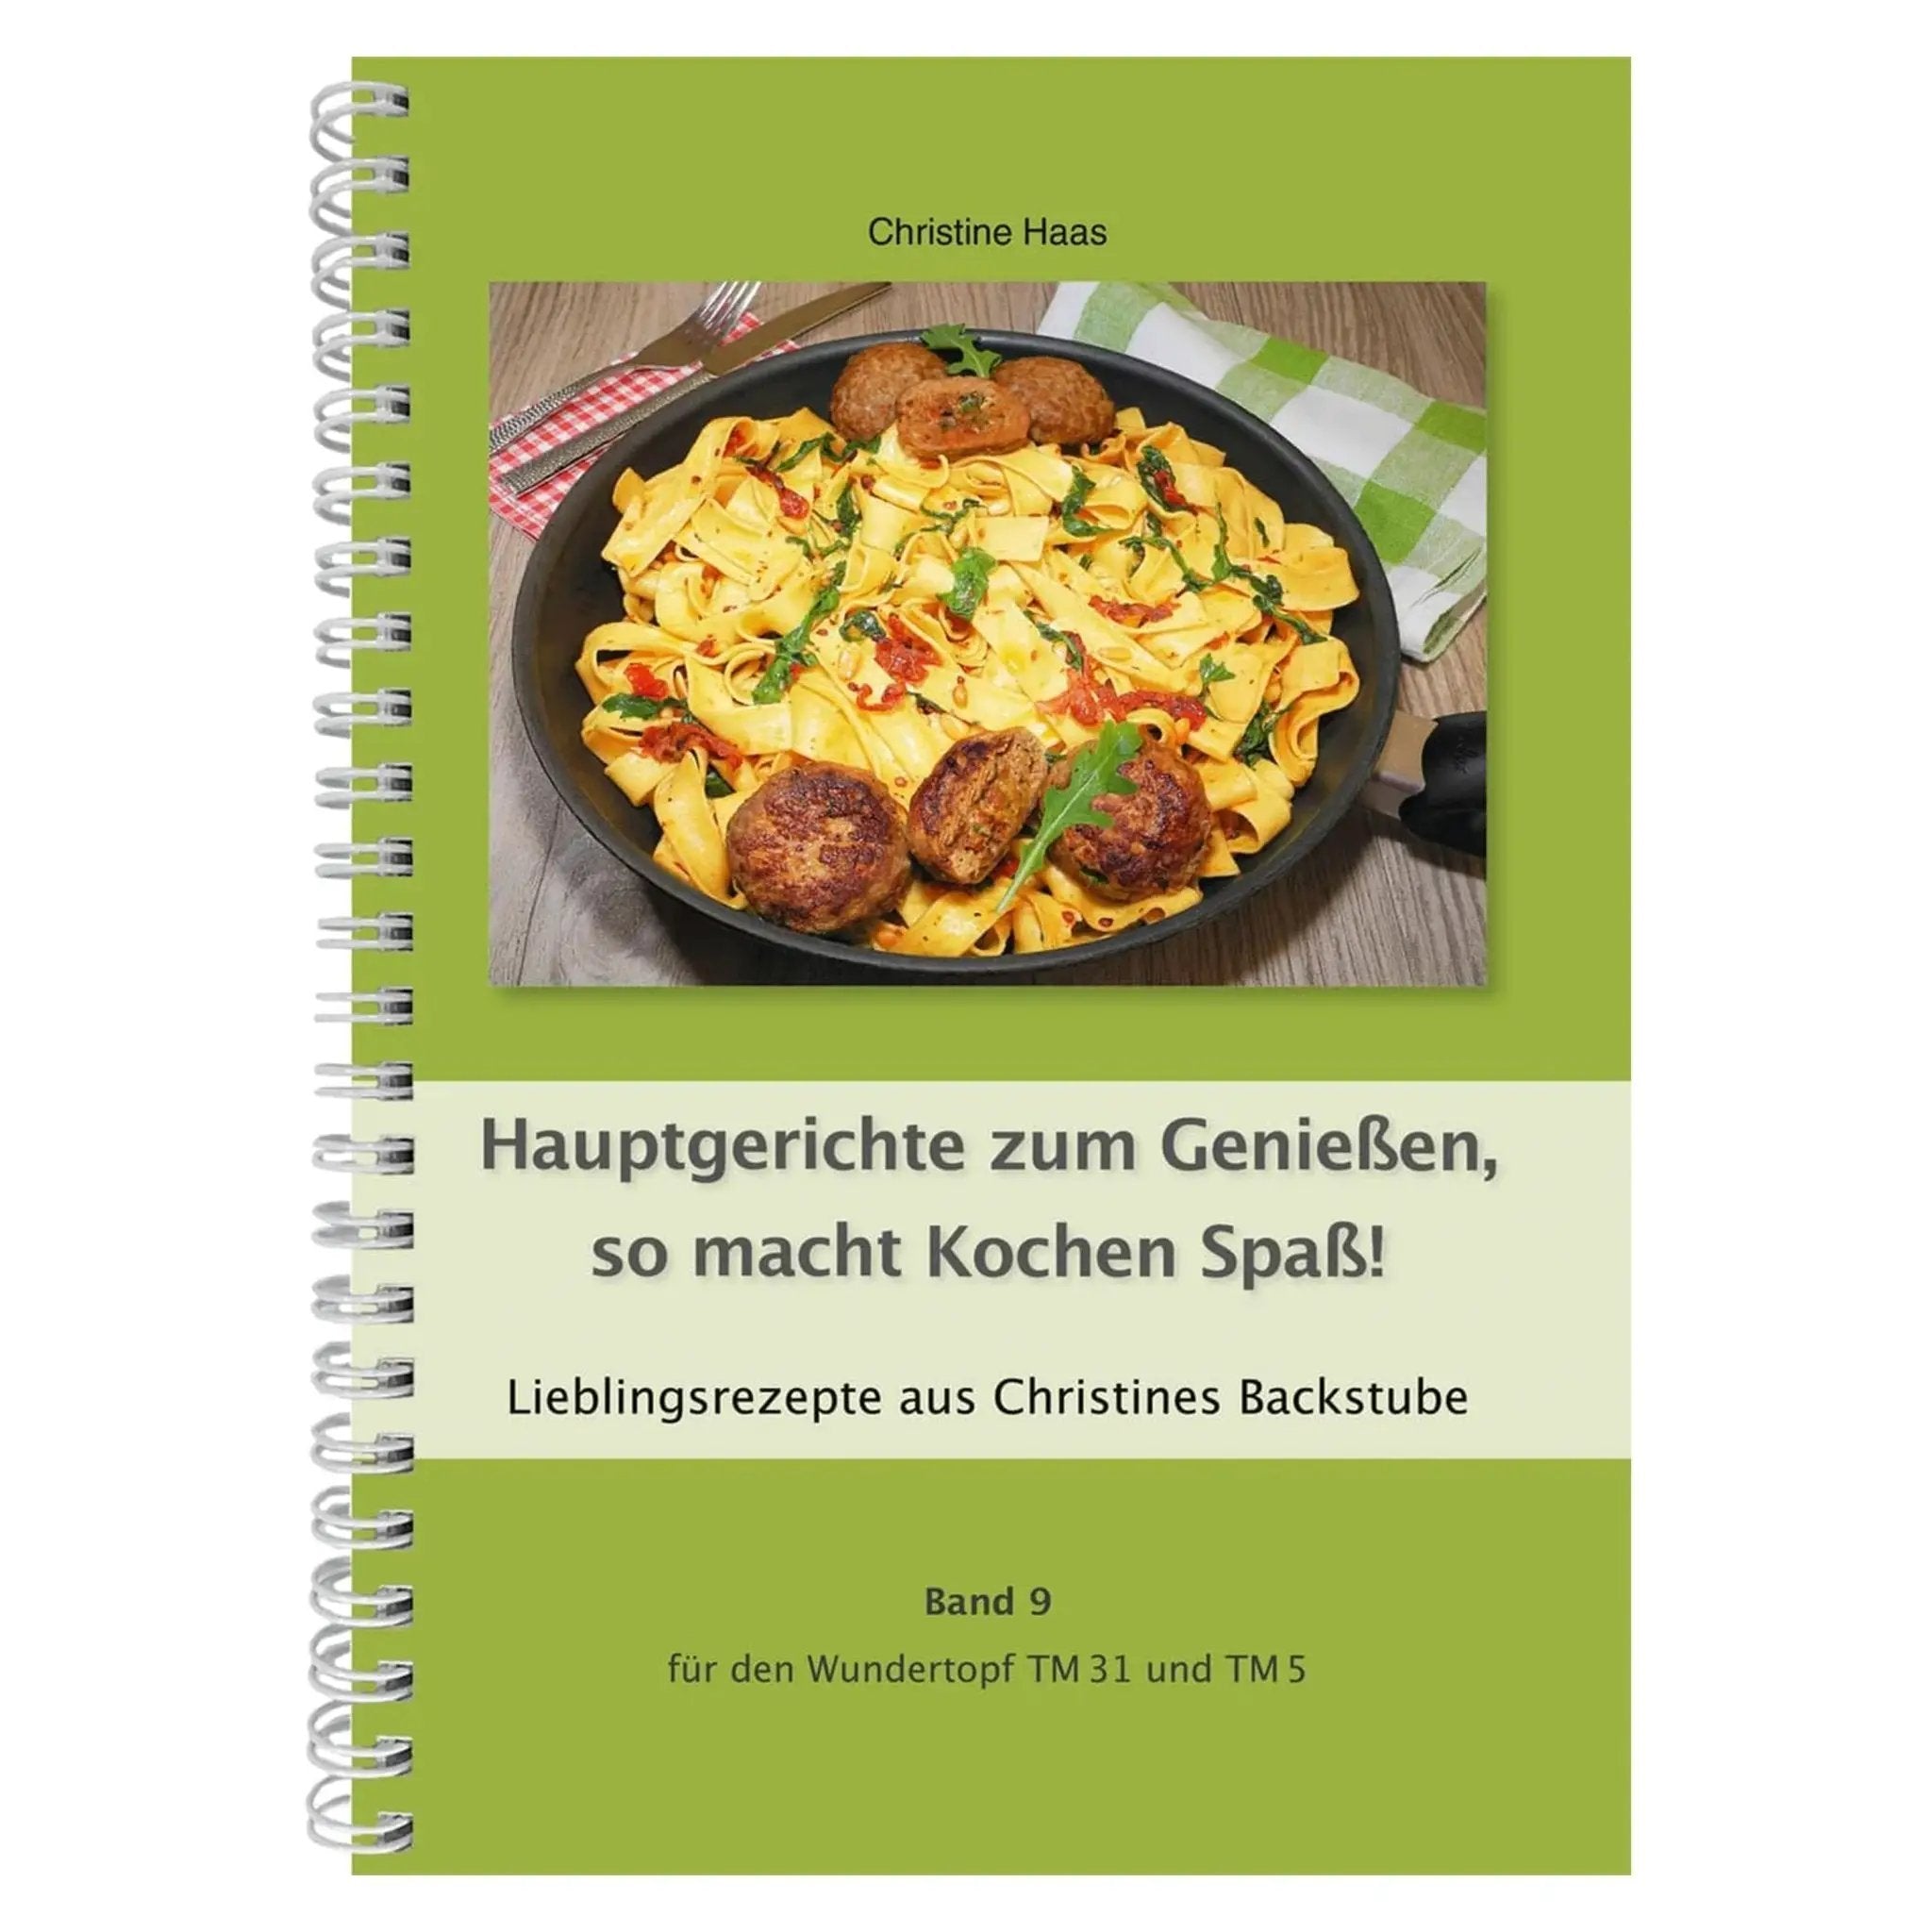 Hauptgerichte zum Genießen, so macht Kochen Spaß! | Christine Haas | Band 9 - Wundermix GmbH